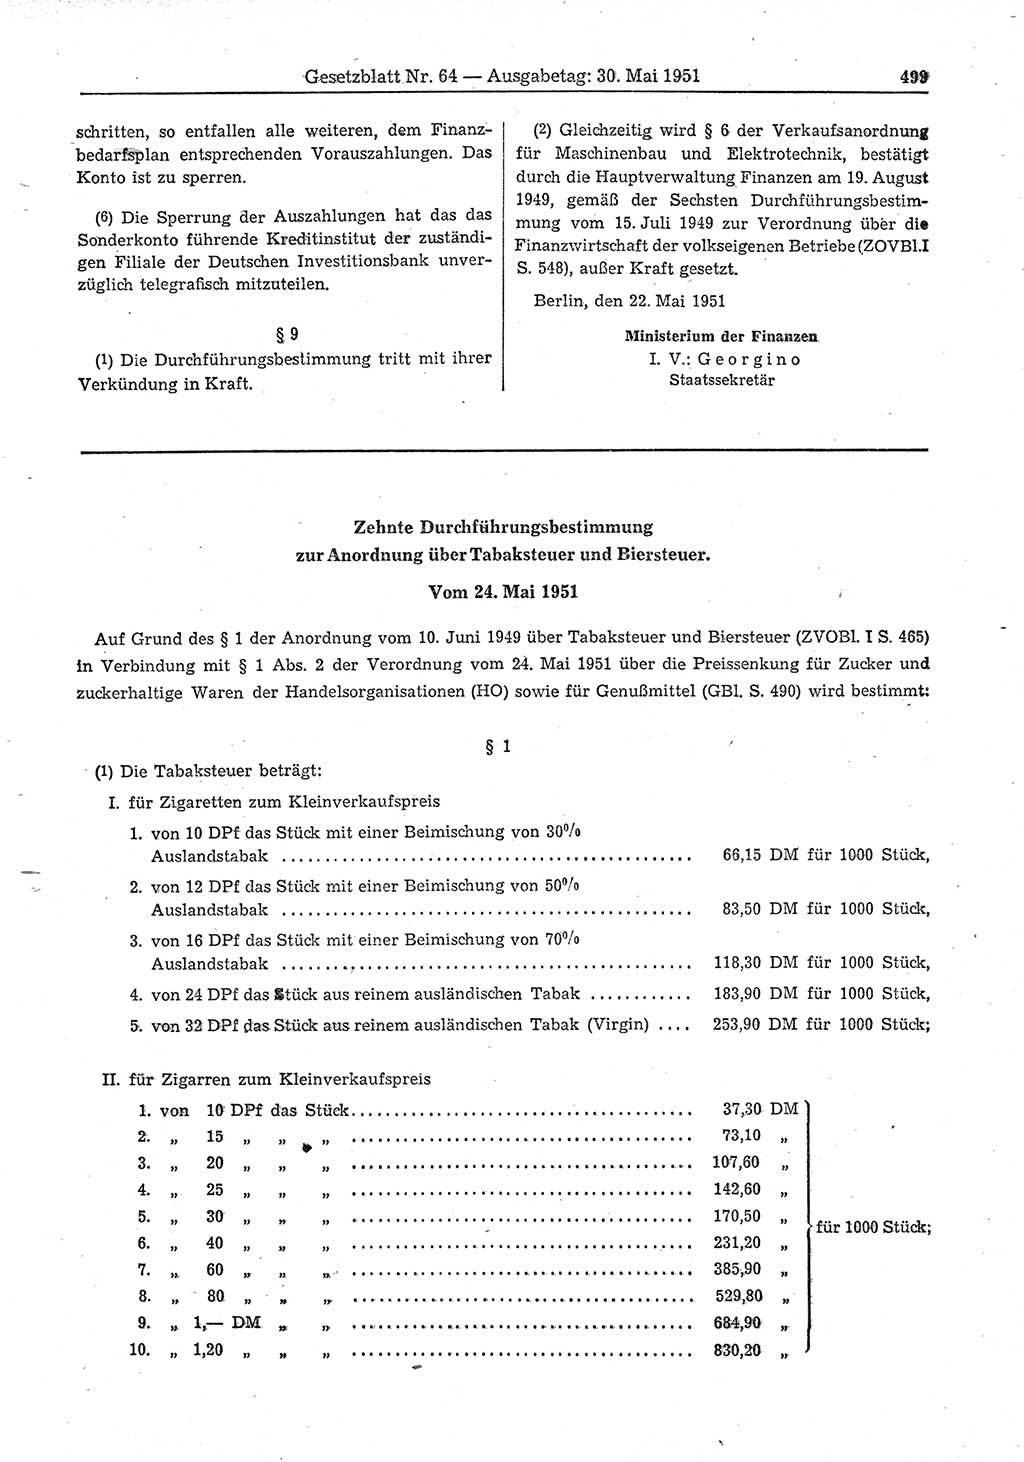 Gesetzblatt (GBl.) der Deutschen Demokratischen Republik (DDR) 1951, Seite 499 (GBl. DDR 1951, S. 499)